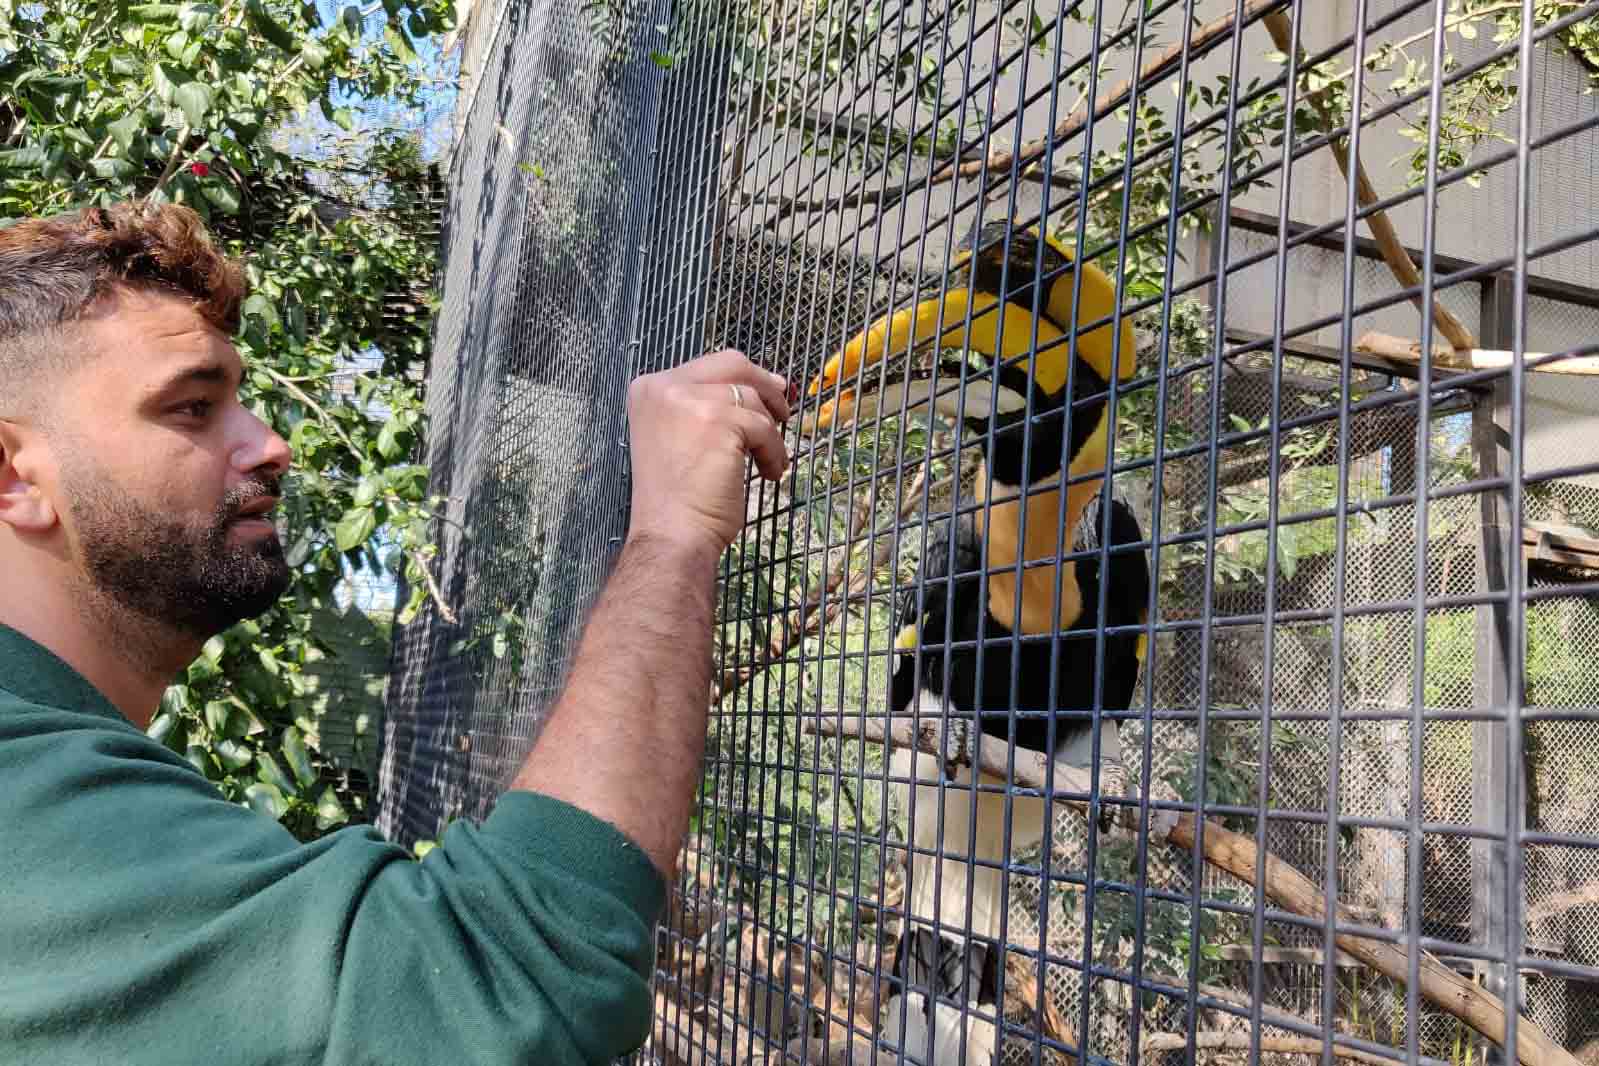 ליאור לוזון מאכיל ציפור: "אנשים, בתמימות, לא מבינים למה אסור להם להאכיל את בעלי החיים" (צילום: אלבום פרטי)